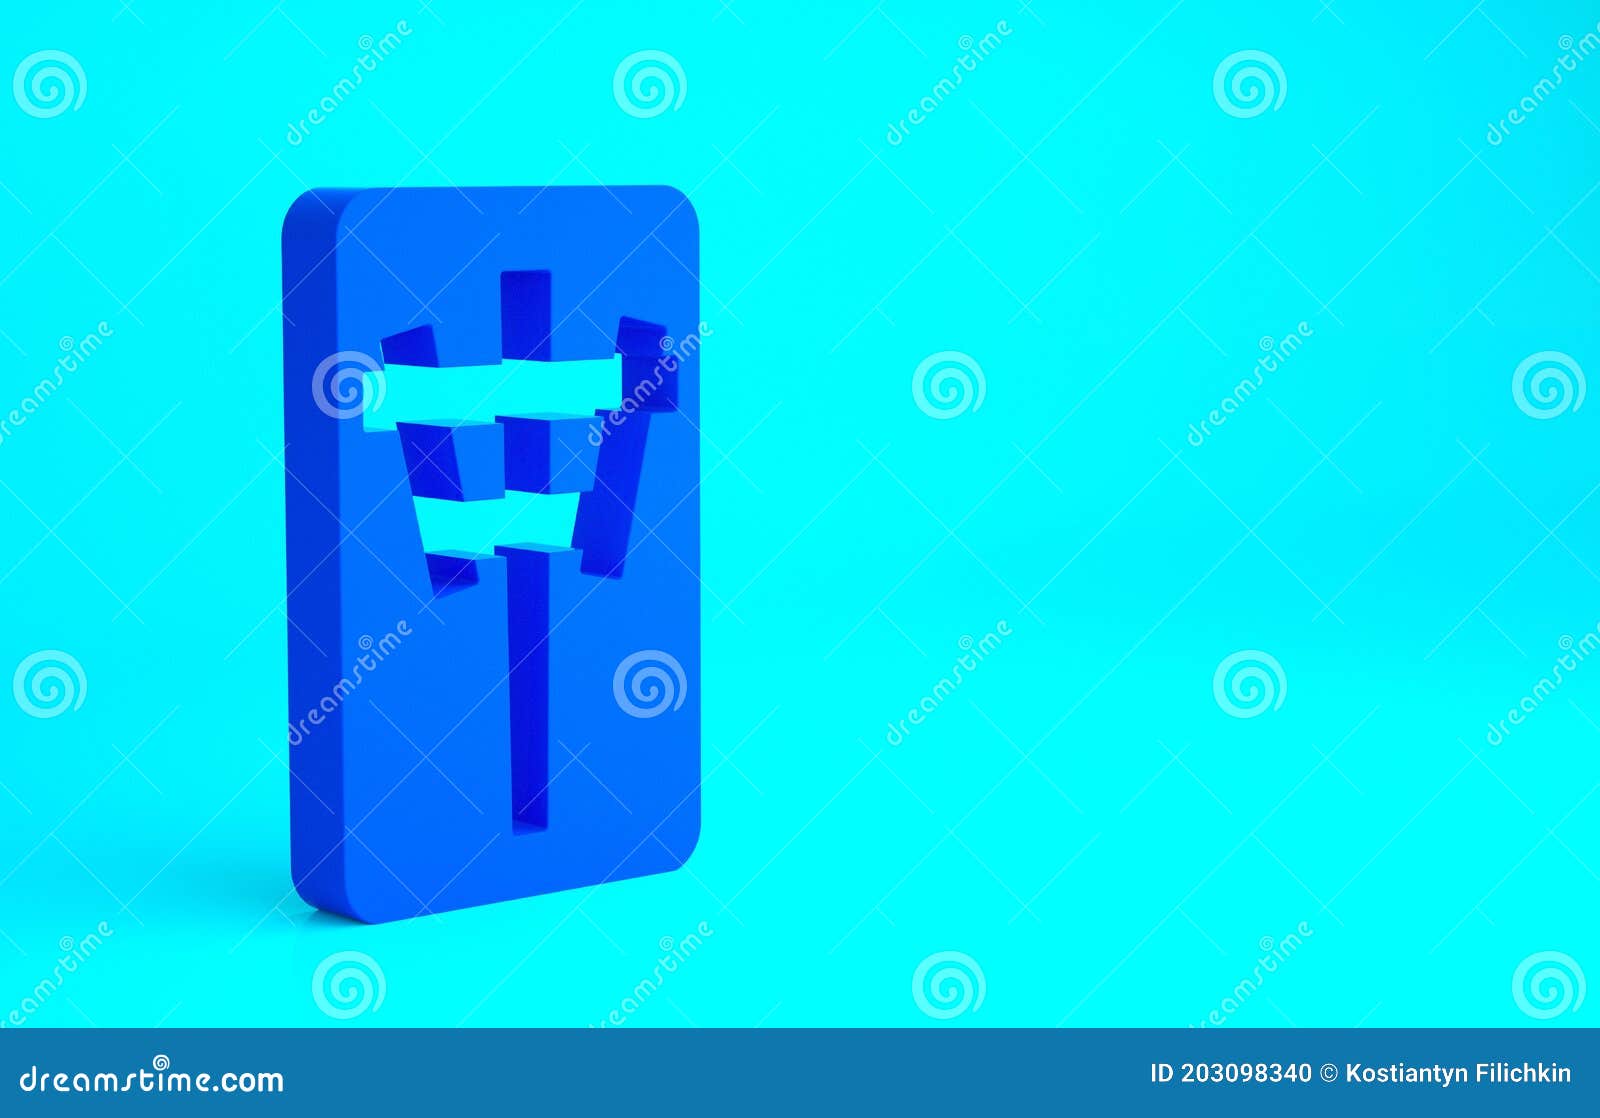 Ícone Isométrico Das Peças, Isolado Em Fundo Azul E Roxo. Emoji Do Jogo Do  Dragão Vermelho Mahjong Chinês. Quadrado Ilustração Stock - Ilustração de  flor, quadrado: 207955681